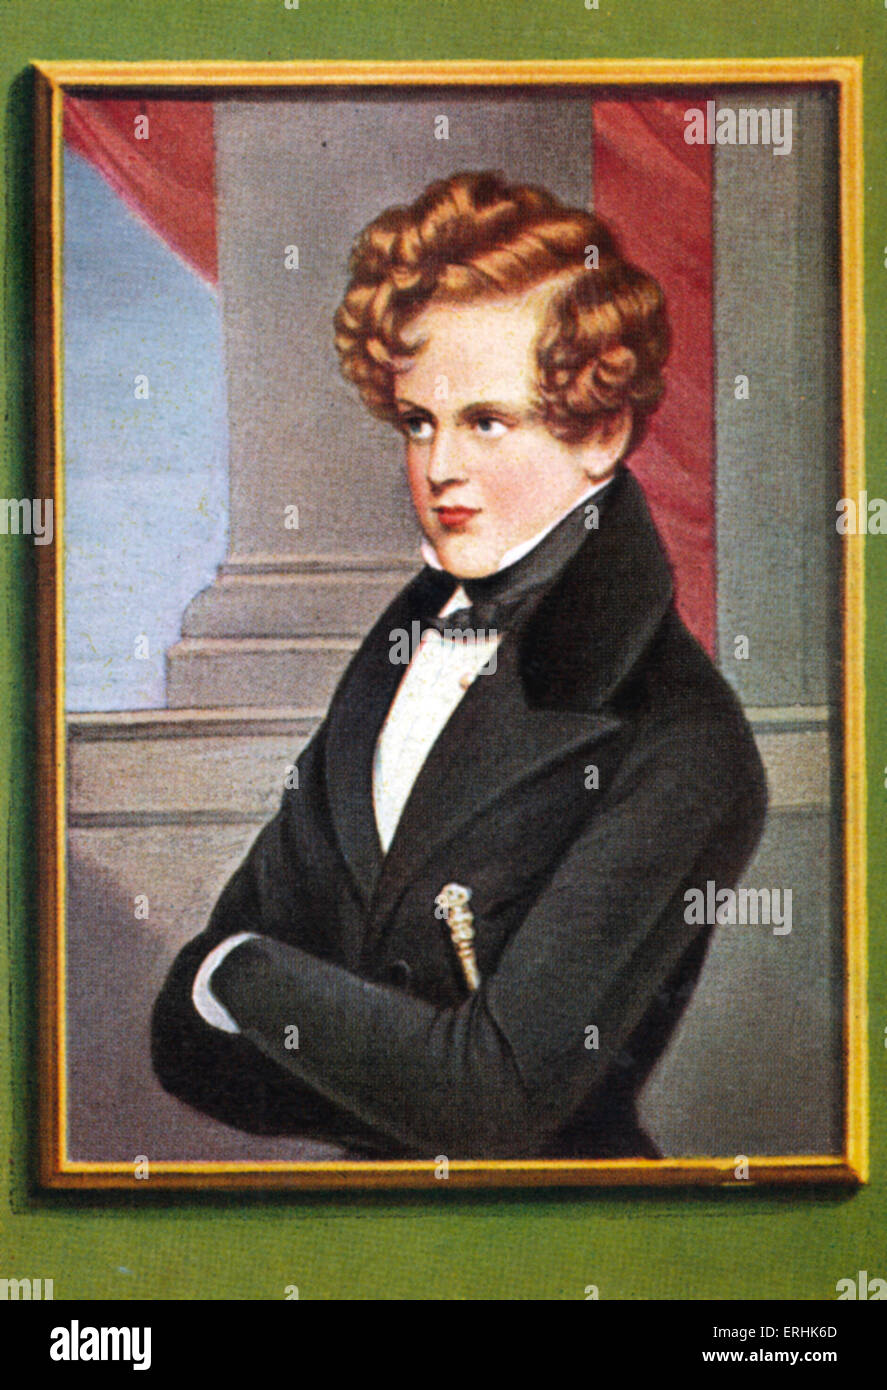 Napoléon II, duc de Reichstadt. Portrait. Fils de Napoléon Bonaparte, et brièvement le deuxième empereur de France. 20 mars 1811 - Banque D'Images